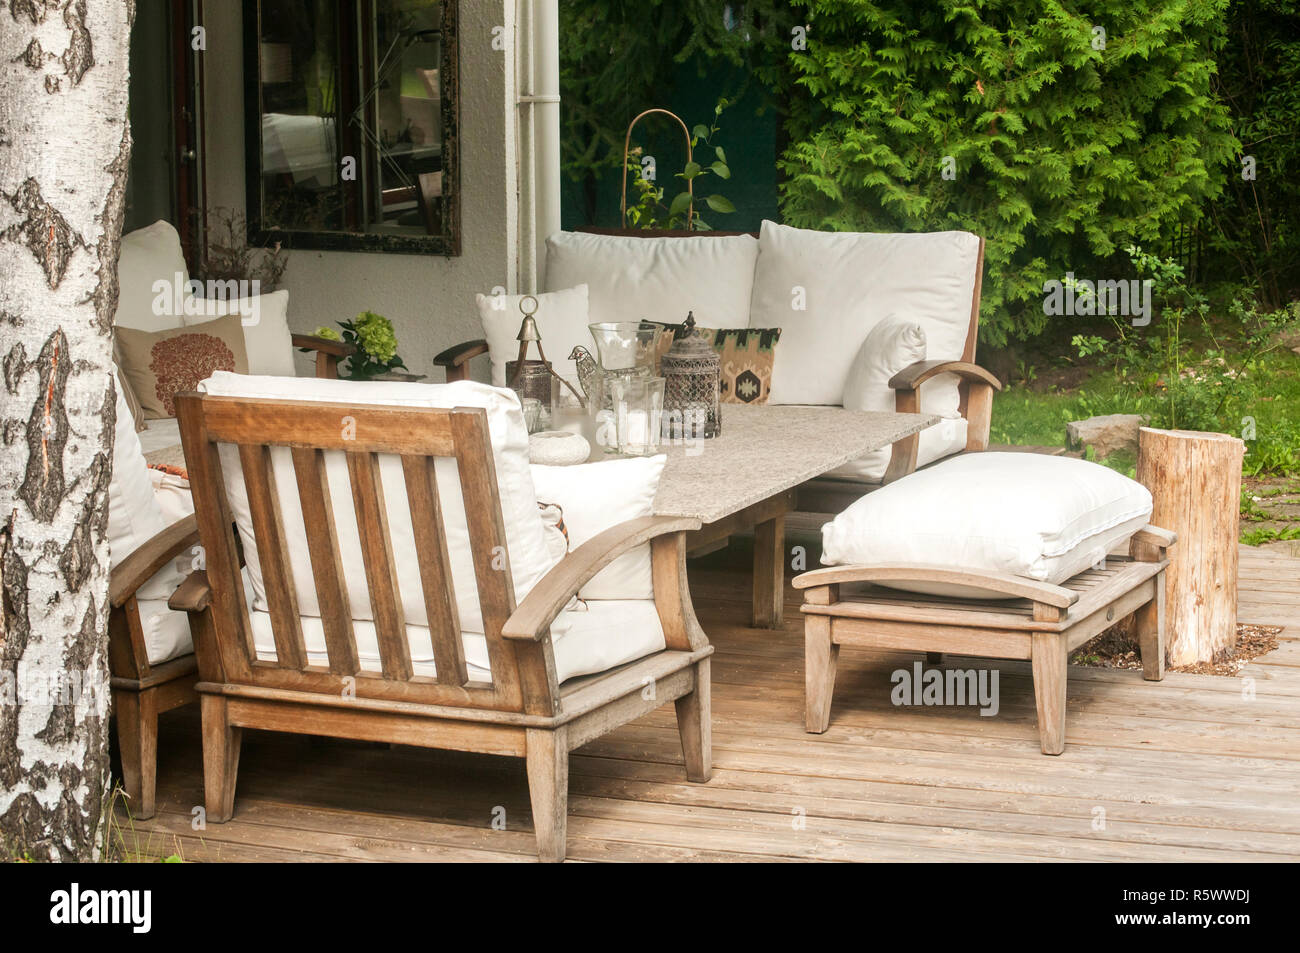 Home Garten Holzmobel Mit Tisch Stuhlen Und Kissen Auf Holzbrettern Boden Stockfotografie Alamy